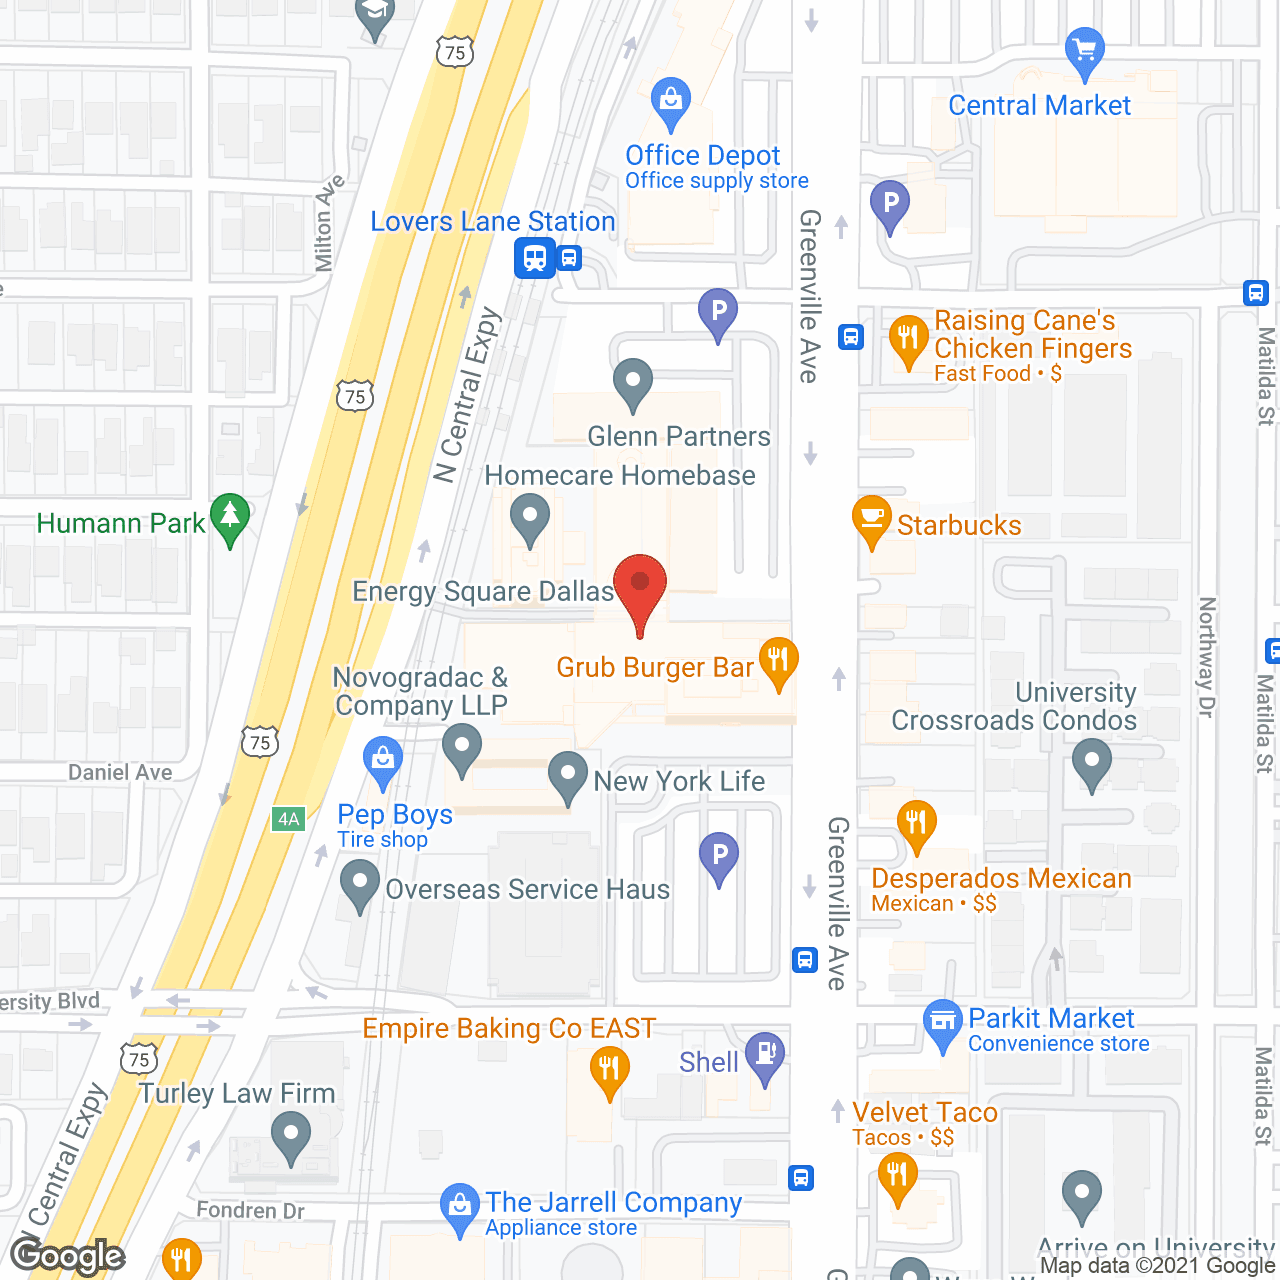 Care Mountain - Dallas in google map